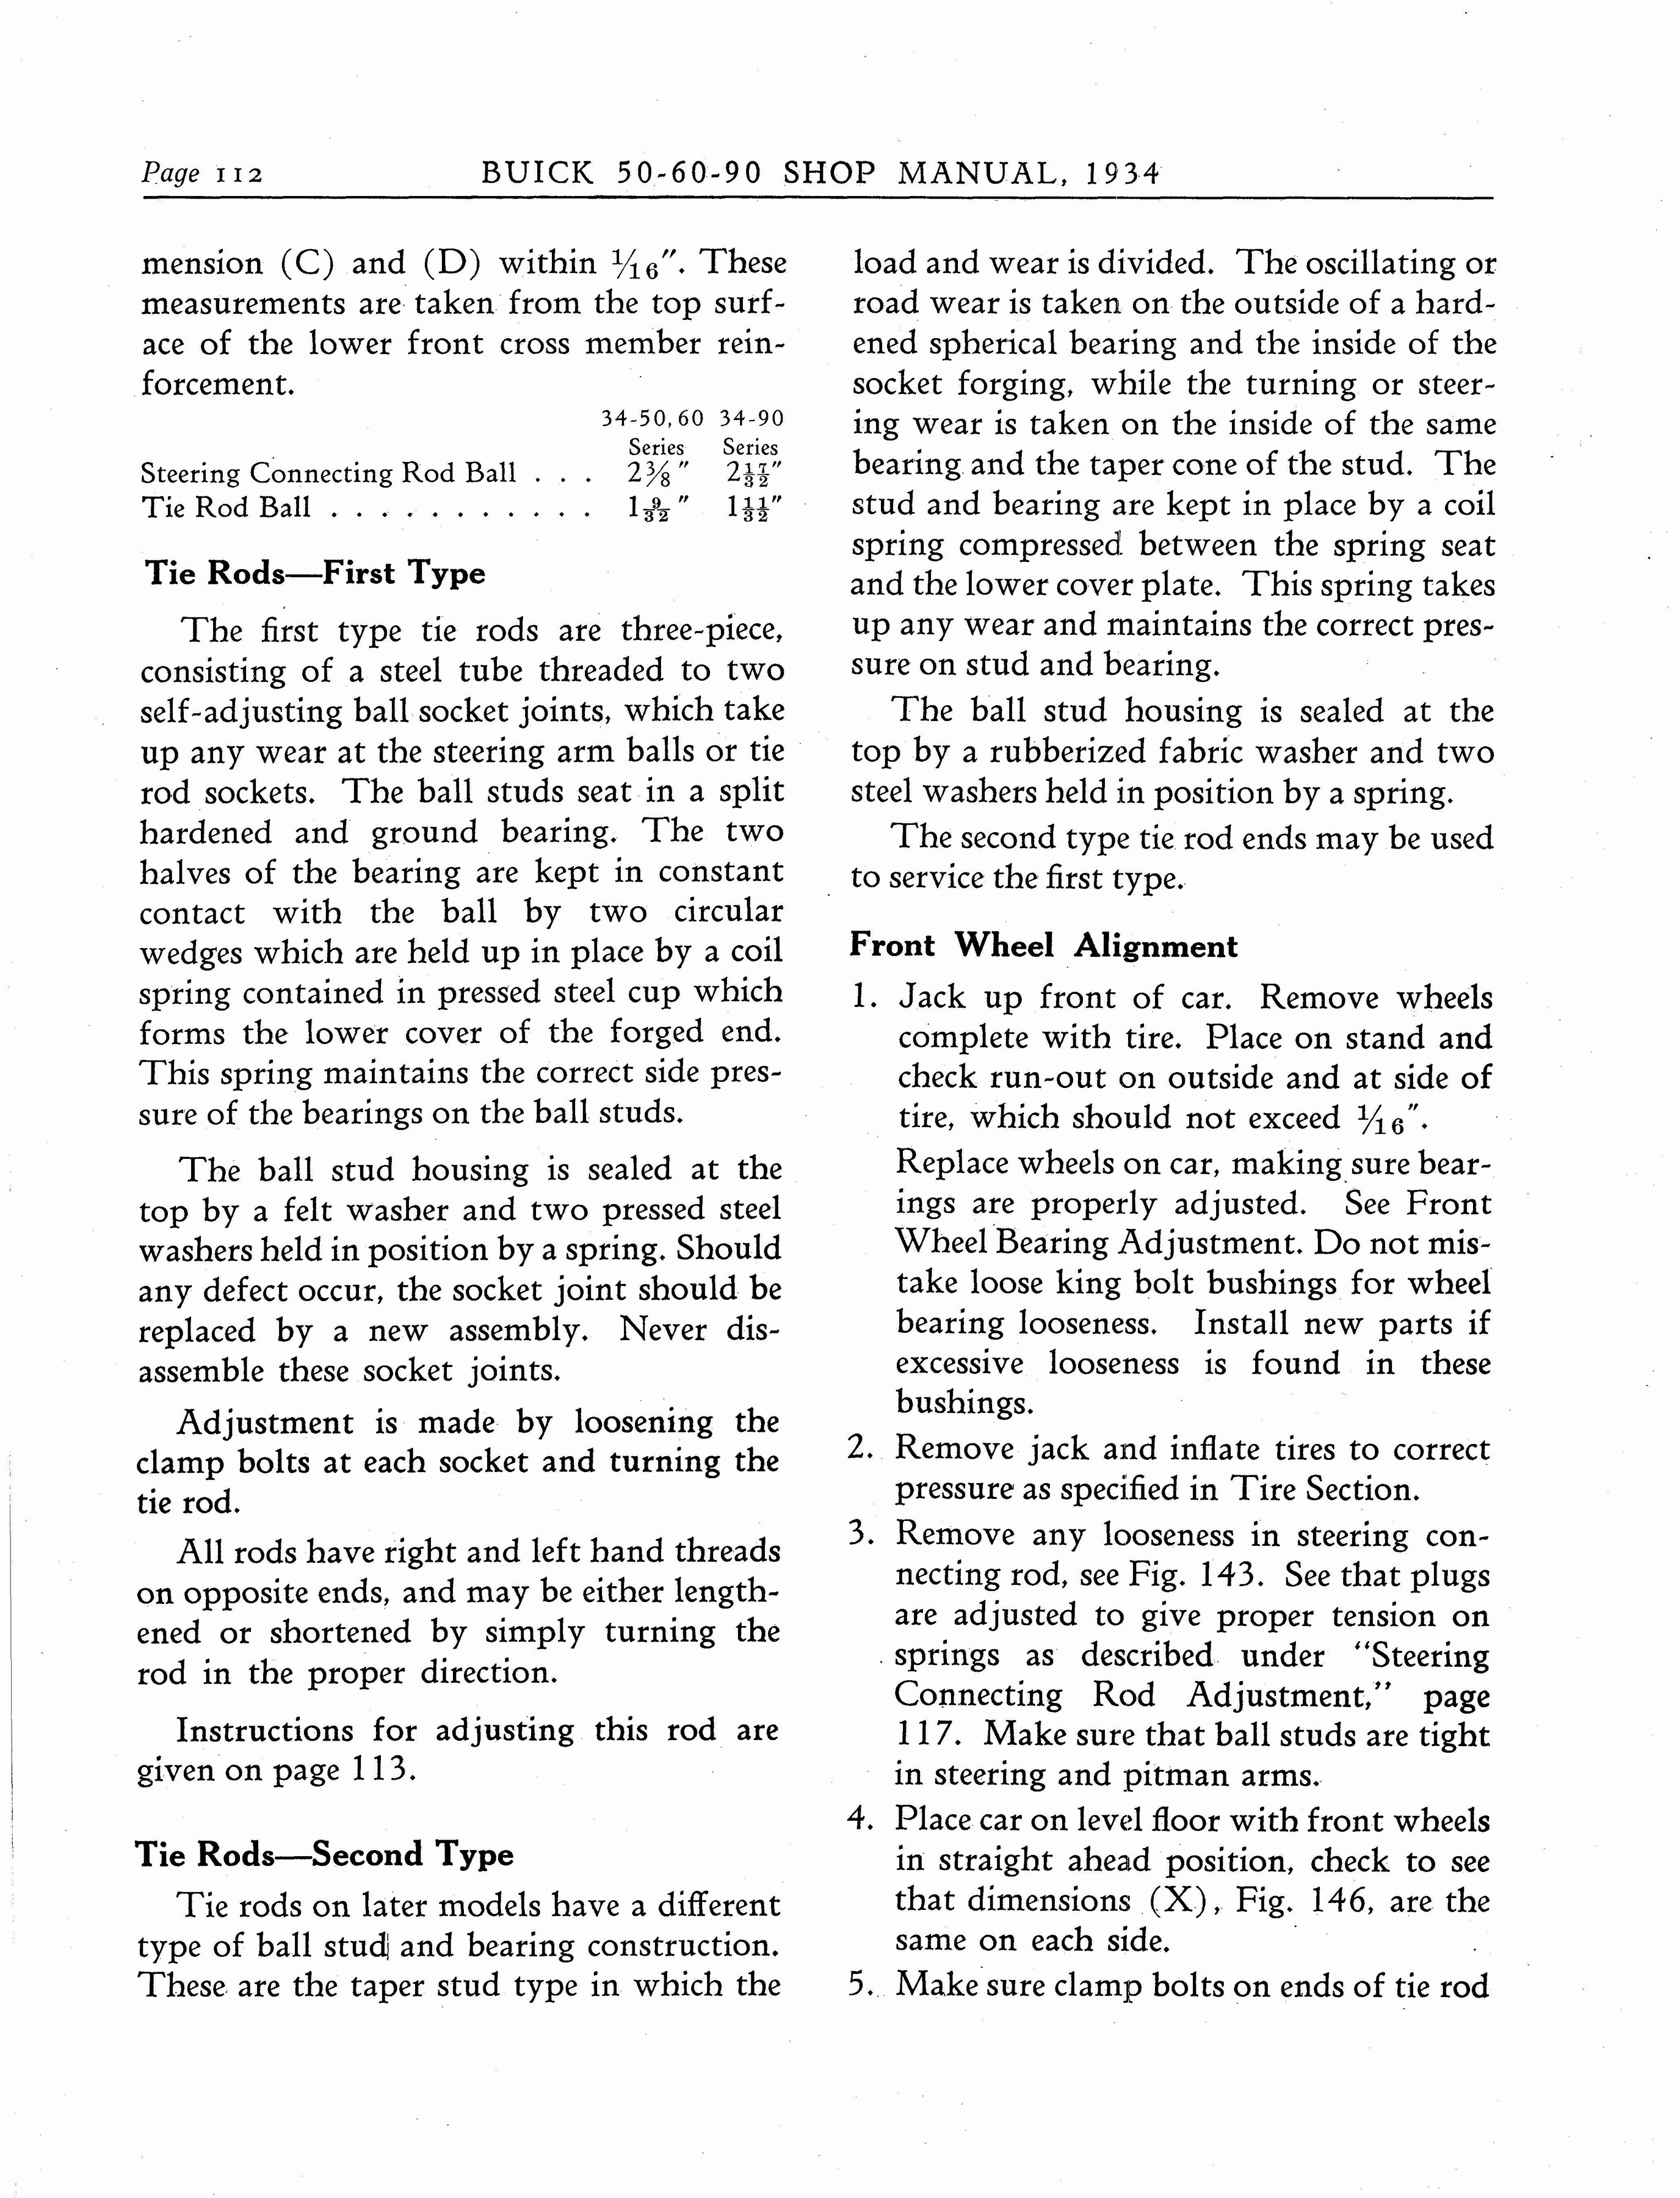 n_1934 Buick Series 50-60-90 Shop Manual_Page_113.jpg